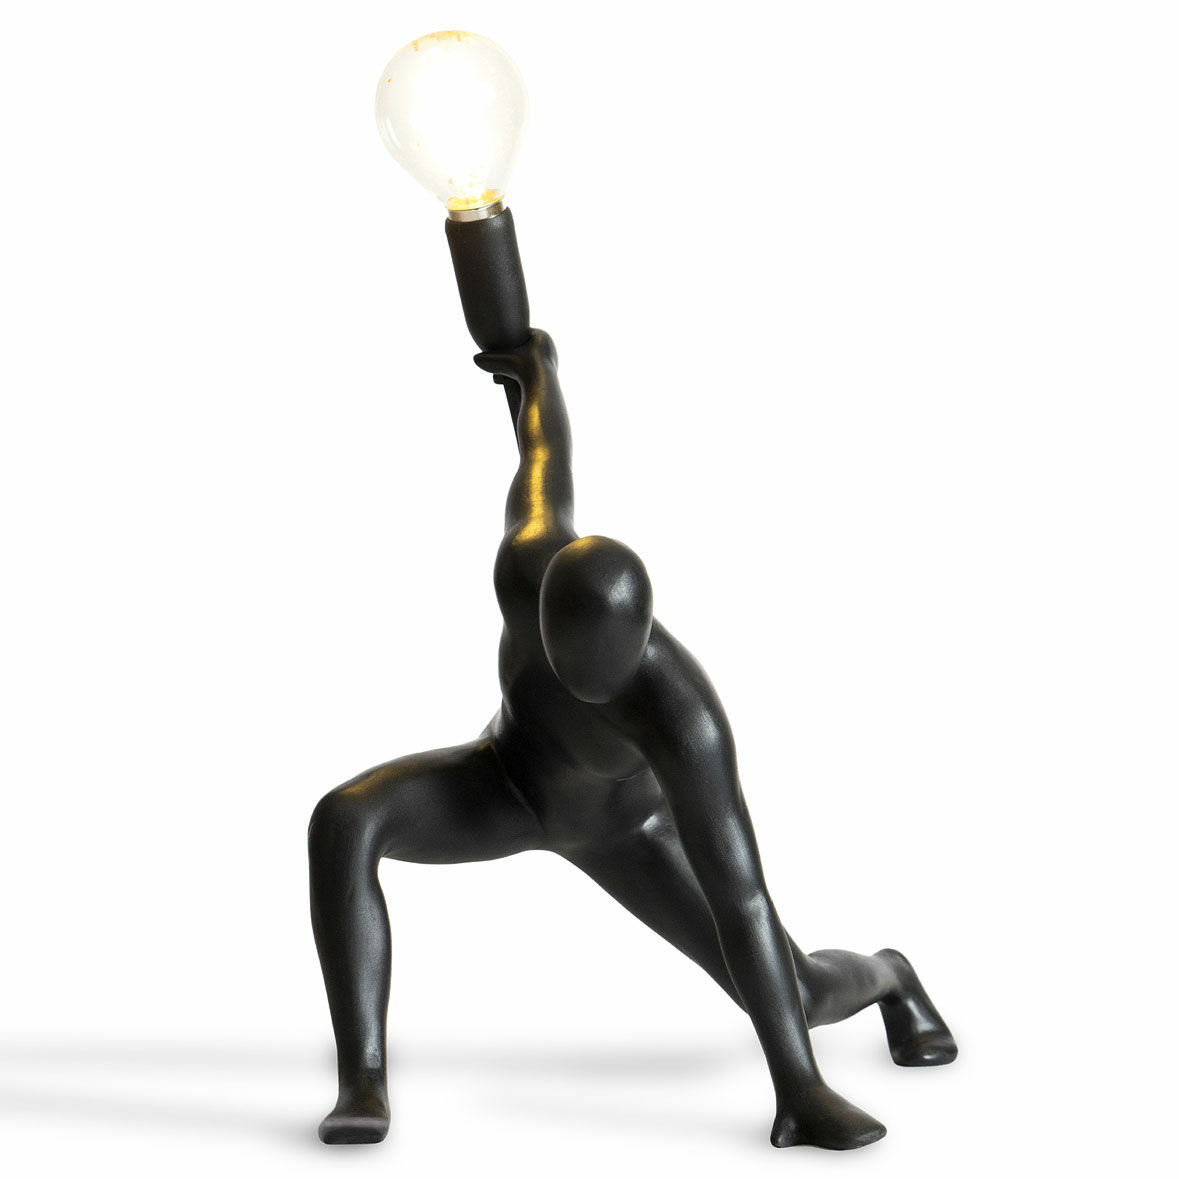 LED-Designerlampe "Dancer Lamp" von Werkwaardig